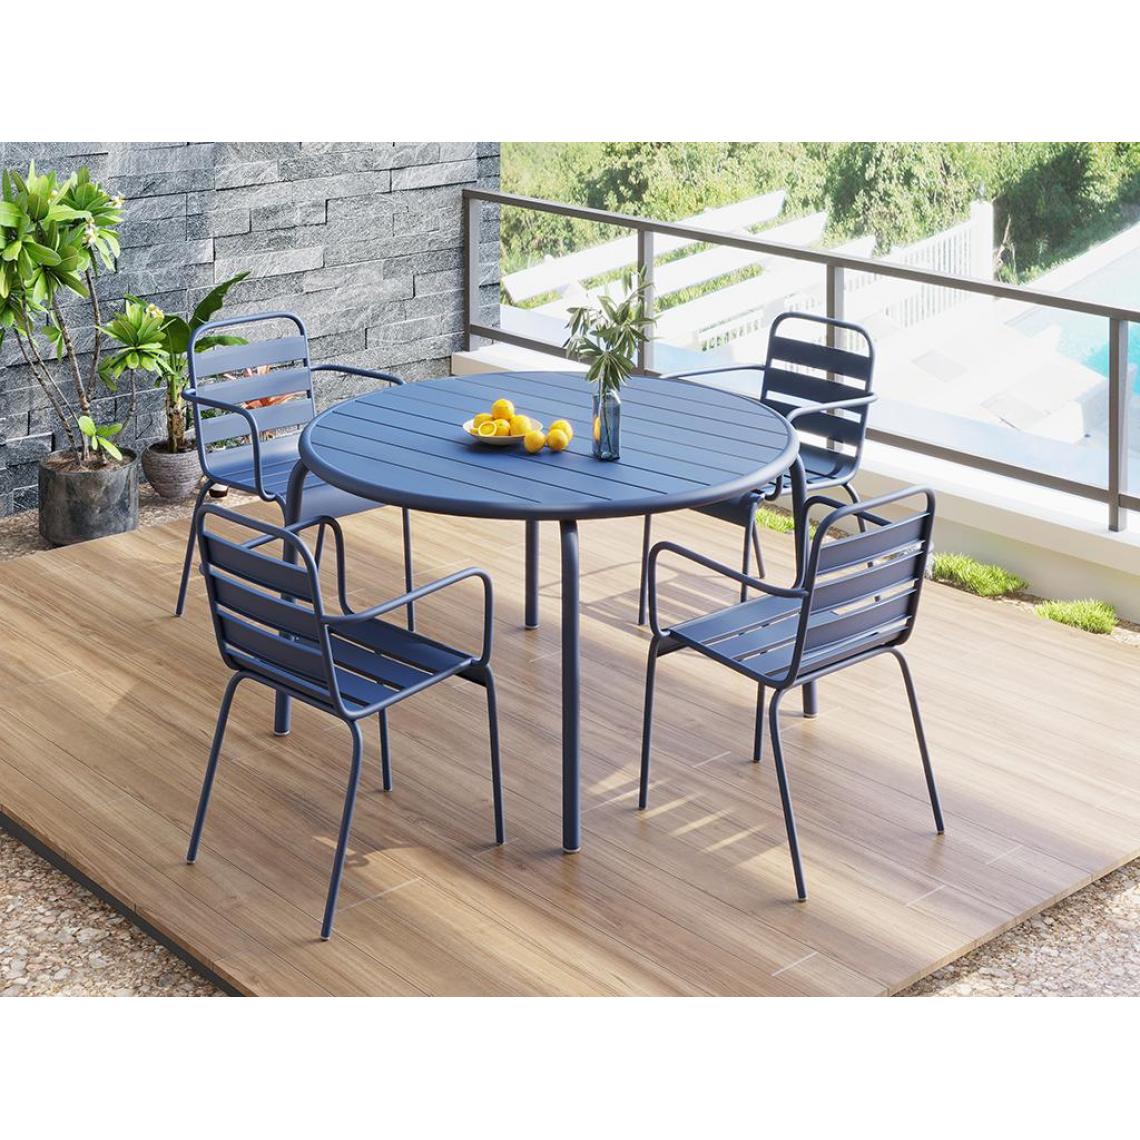 Vente-Unique - Ensemble jardin table et chaise MIRMANDE - Ensembles tables et chaises